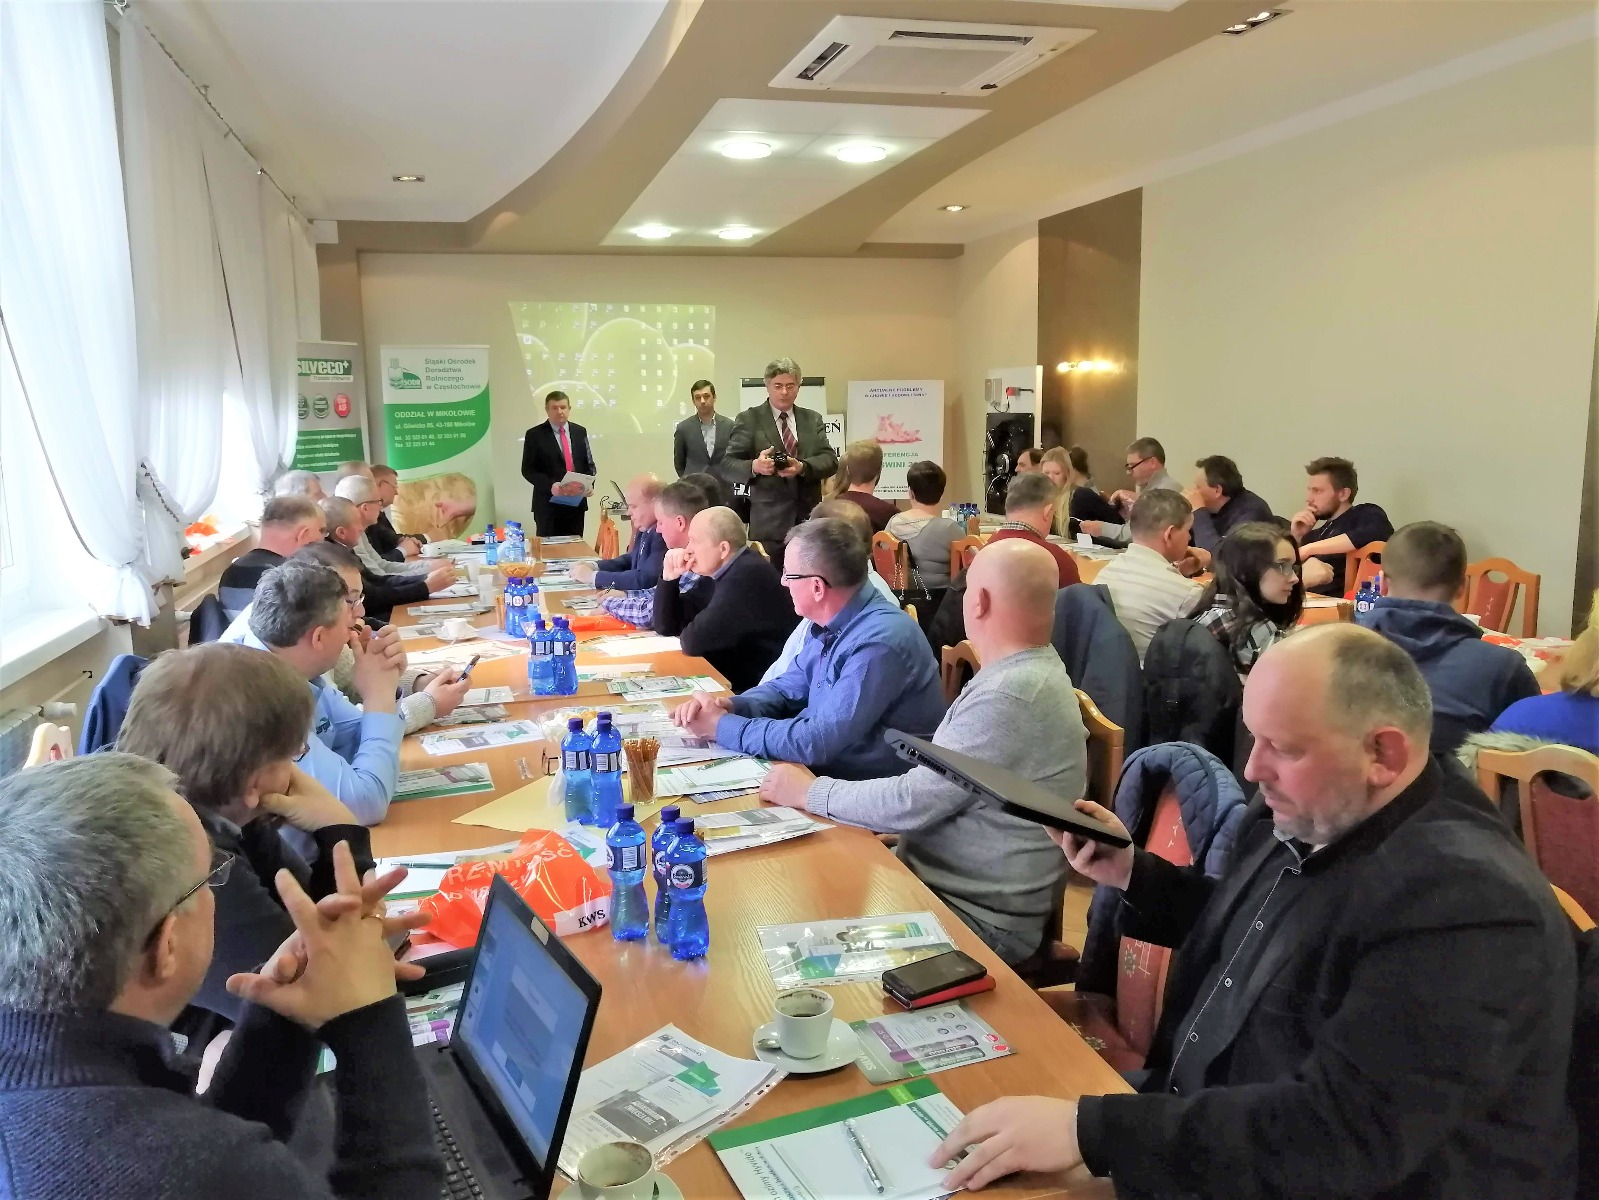 dzień świni 2020 eletor śląski ośrodek doradztwa rolniczego częstochowa konferencja spotkanie hodowla chów świń